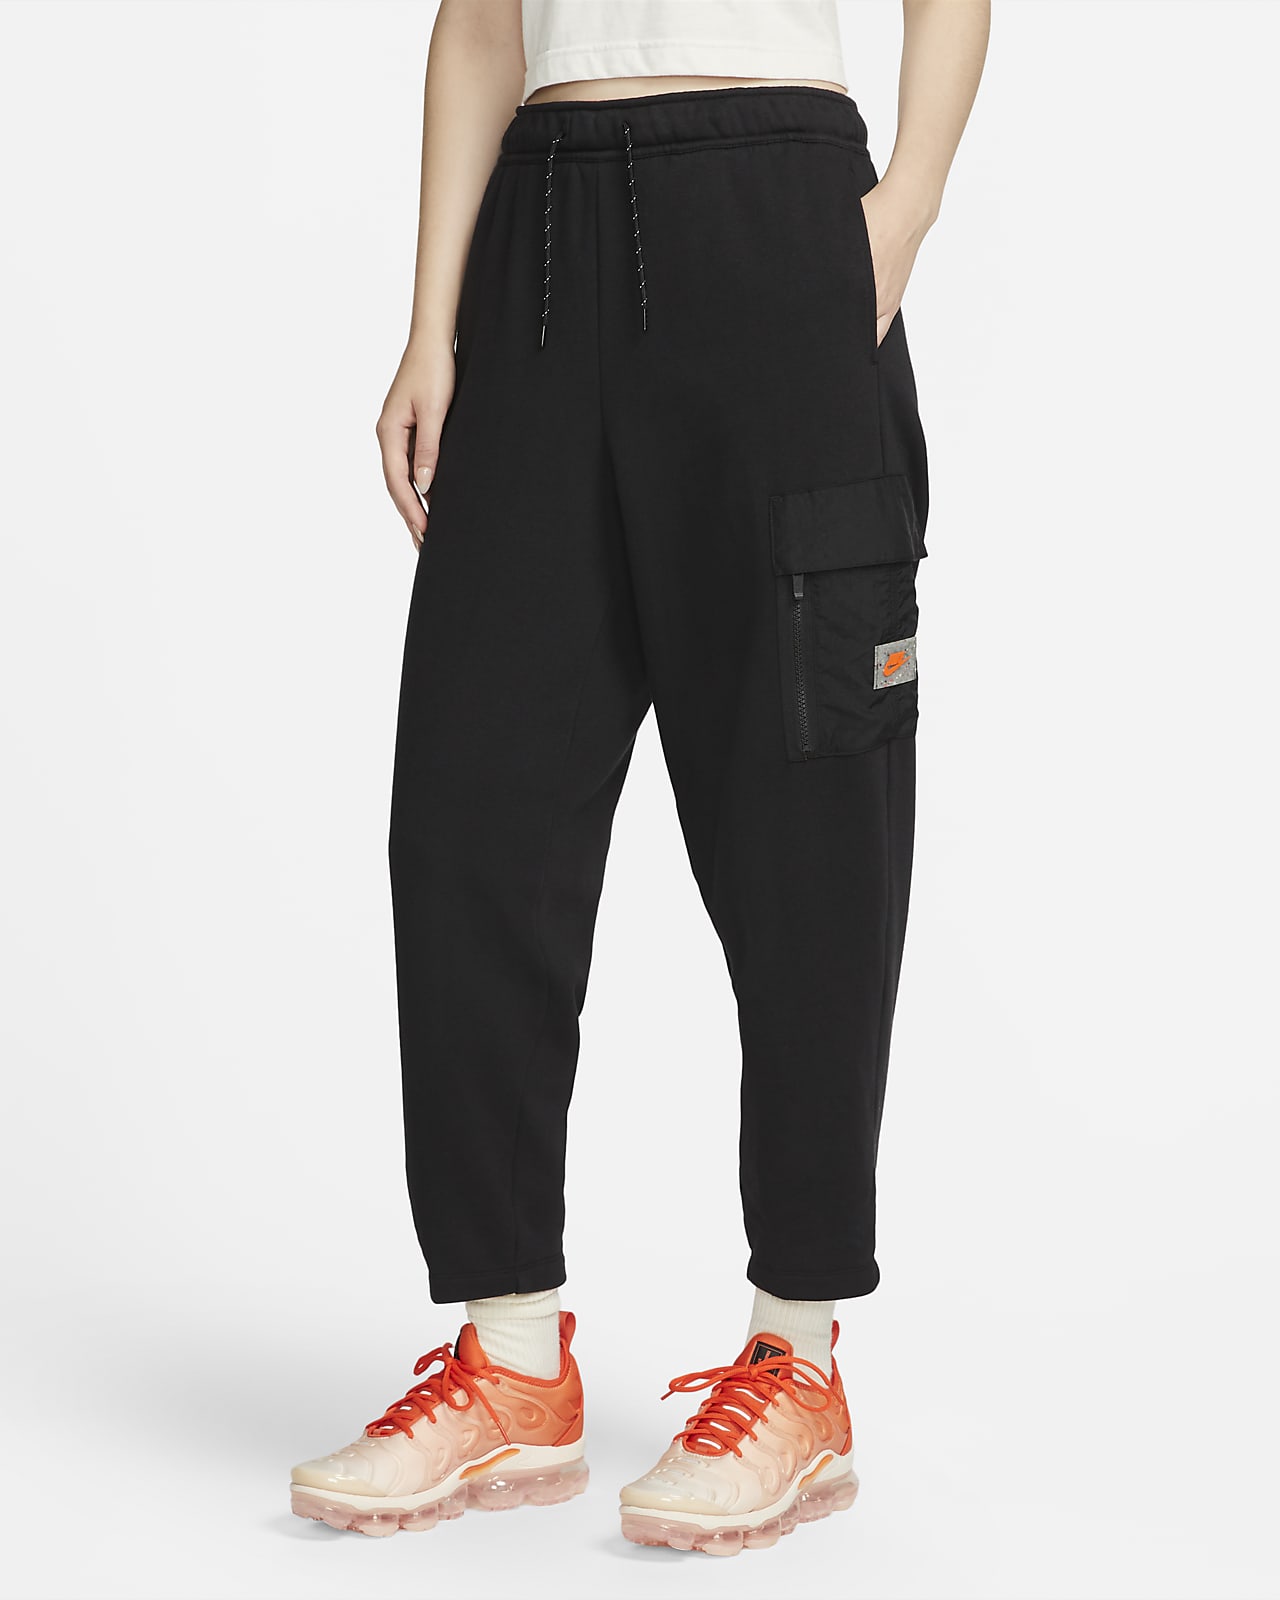 Nike Sportswear Women's Sports Utility Fleece Cargo Trousers